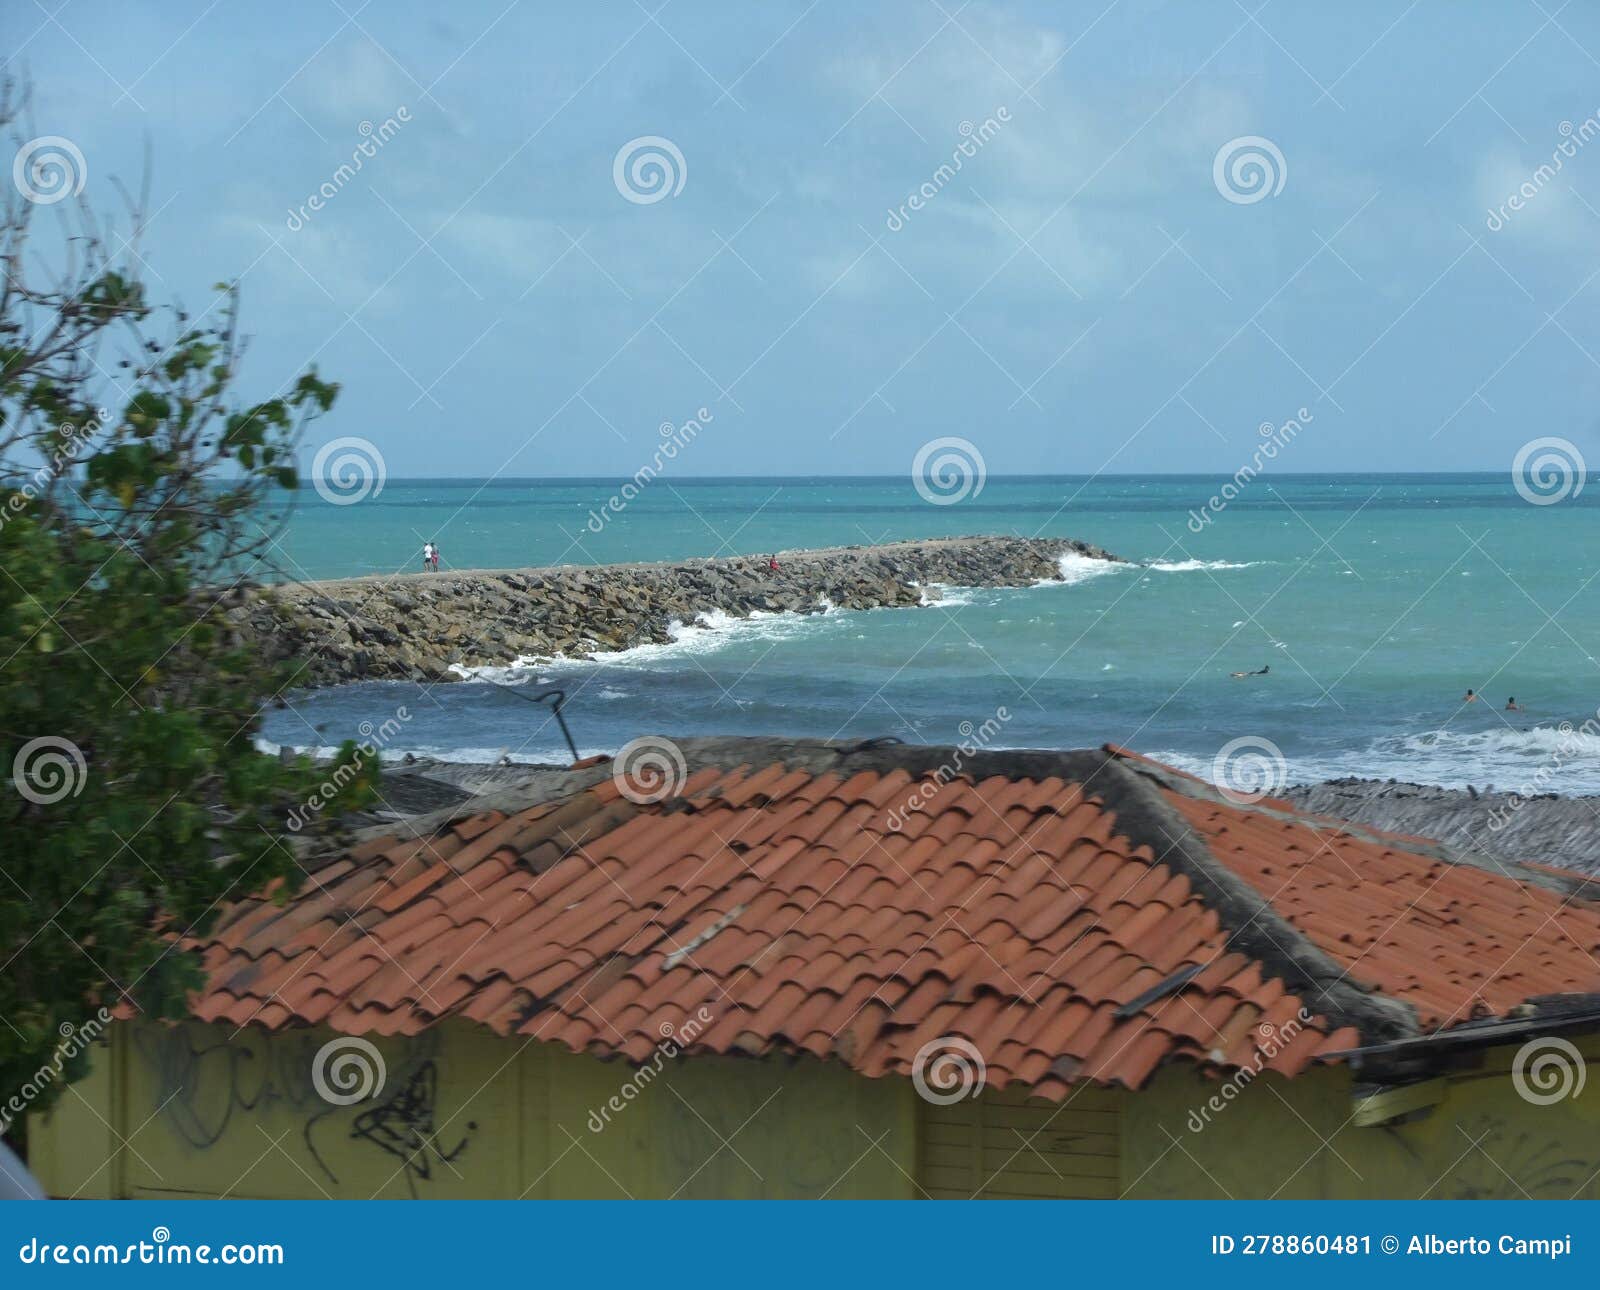 landscape of Ãguas belas beach in fortaleza